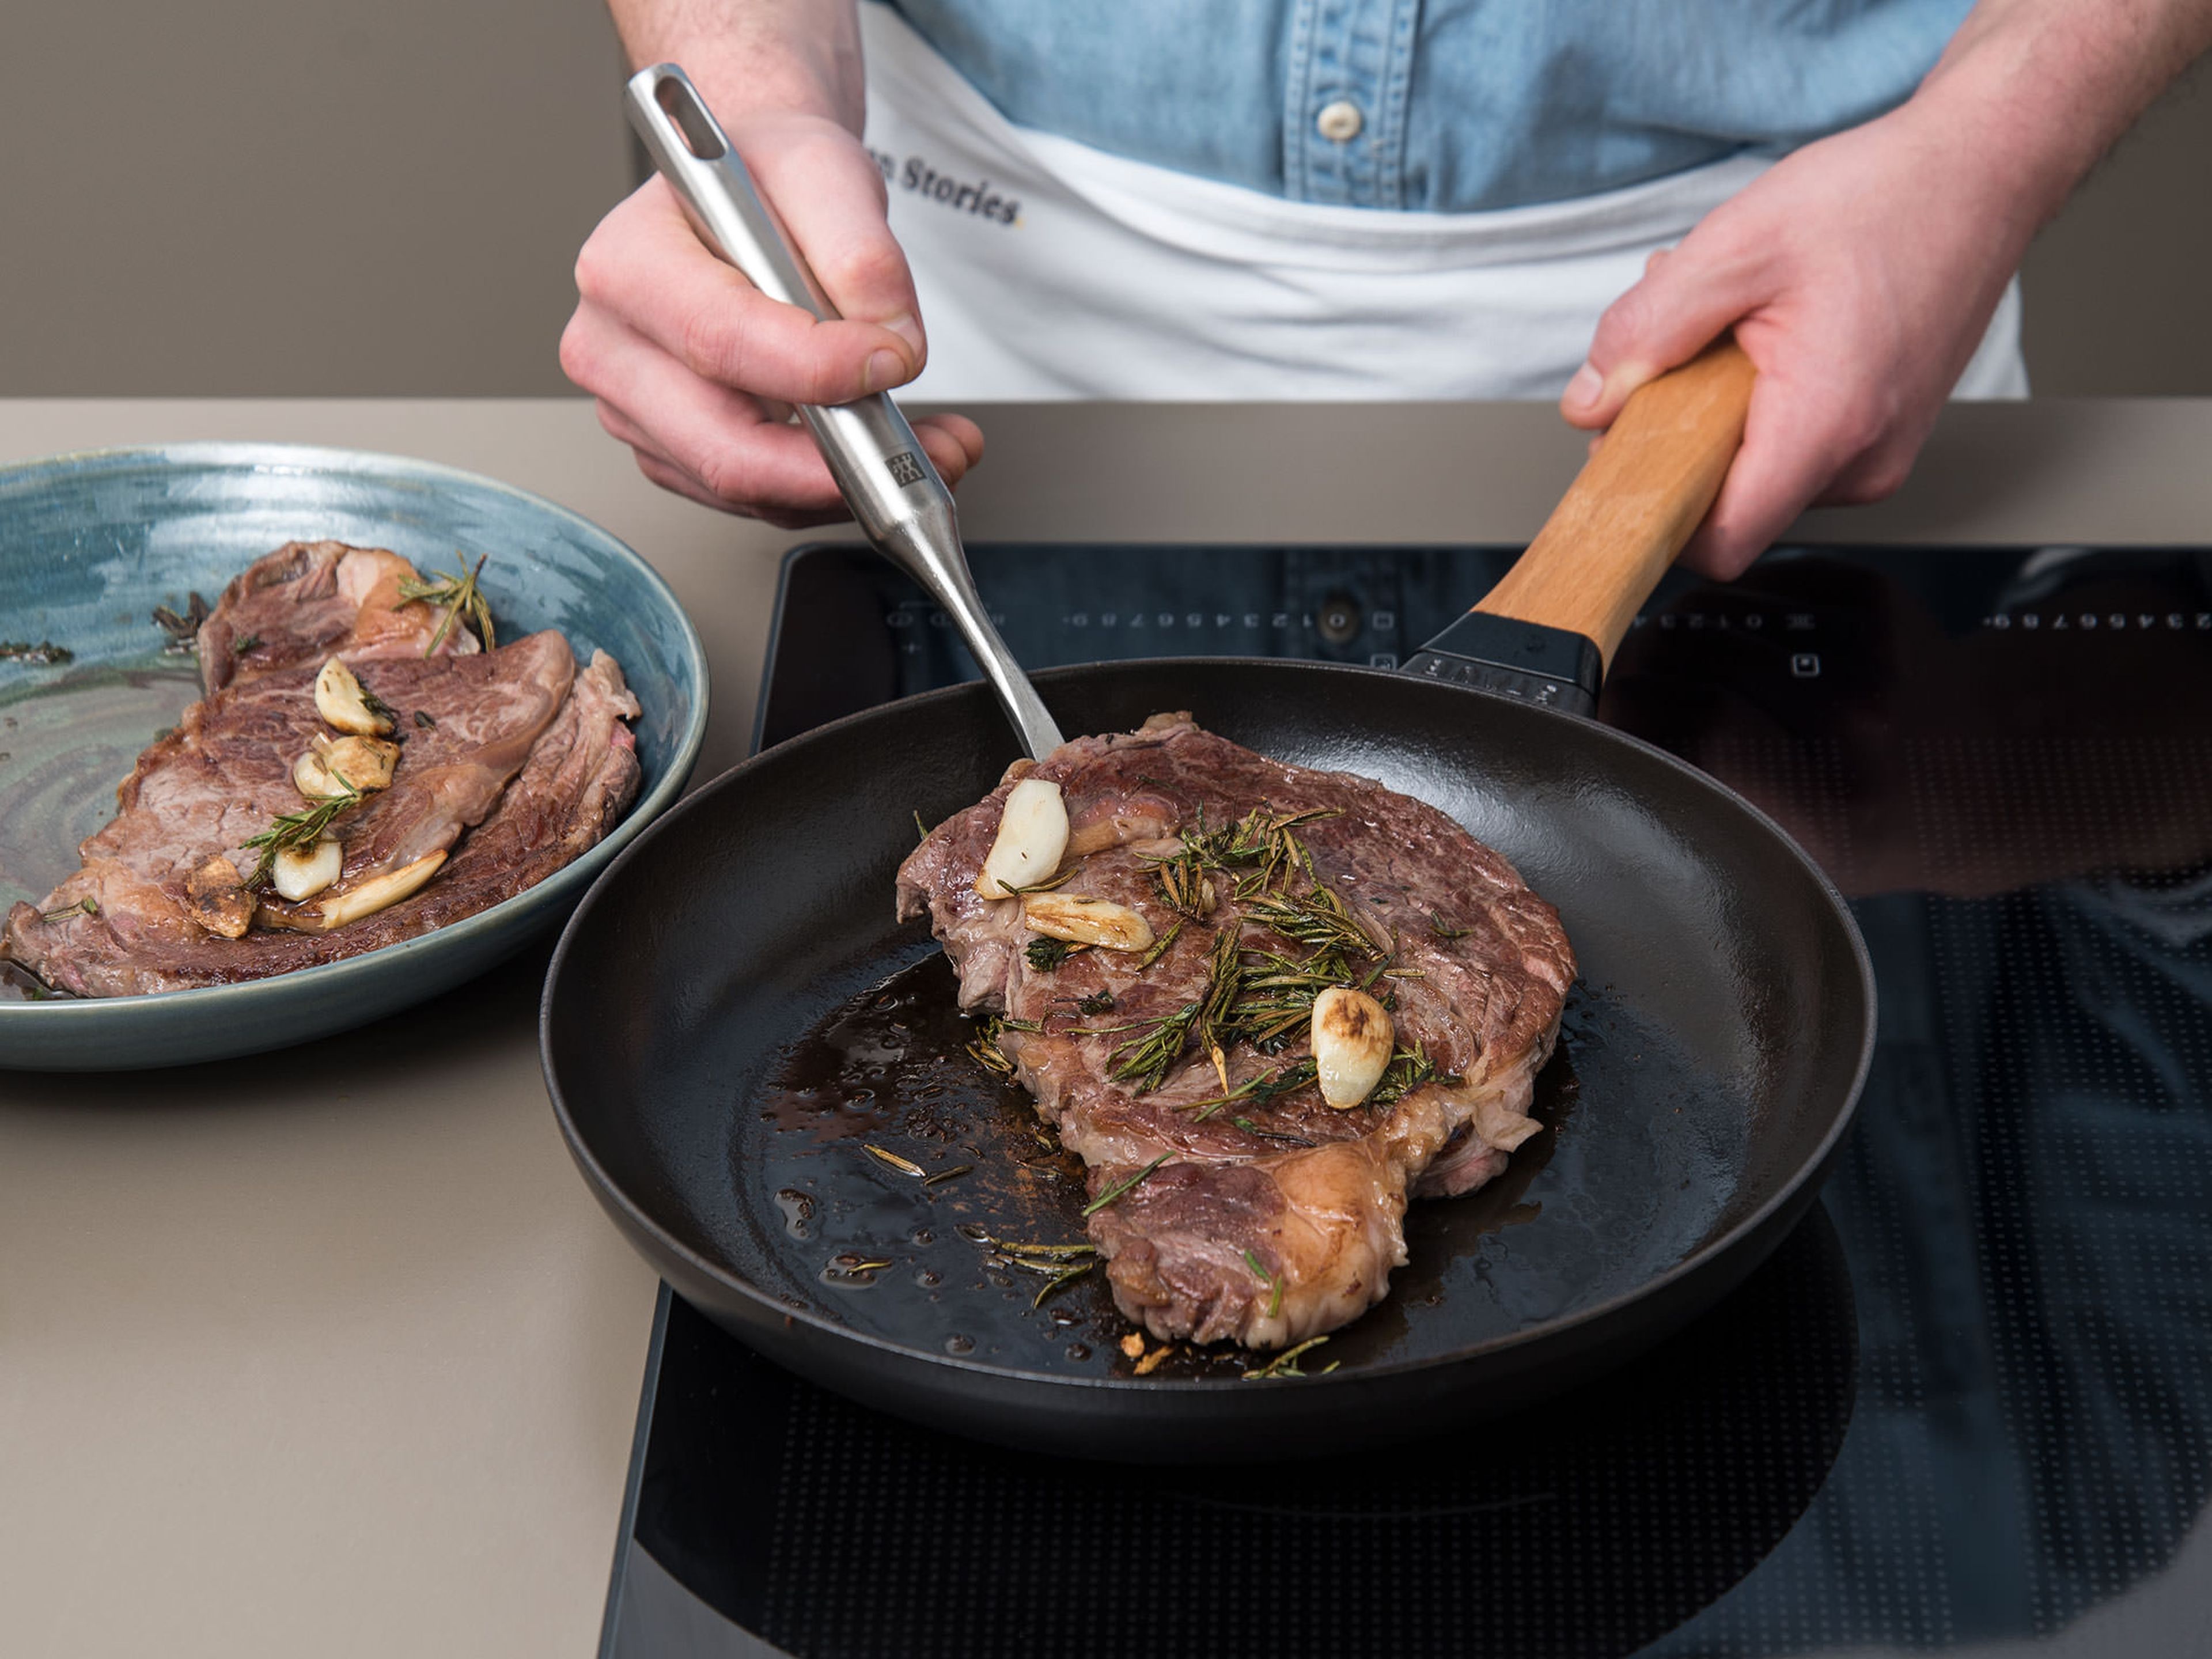 Währenddessen den Backofen auf 60°C vorheizen. Eine gusseiserne Pfanne auf mittlerer bis hoher Stufe erhitzen. Sobald die Pfanne vollständig erhitzt ist, Steaks aus dem Gefrierbeutel nehmen, mit Kräutern und Knoblauch in die Pfanne geben und von beiden Seiten ca. 4 – 5 Min. scharf anbraten. Steaks mit Kräutern und Knoblauch auf einen tiefen Teller geben. Mit einem flachen Teller bedecken und im Ofen bei 60°C ca. 8 – 10 Min. ruhen lassen.